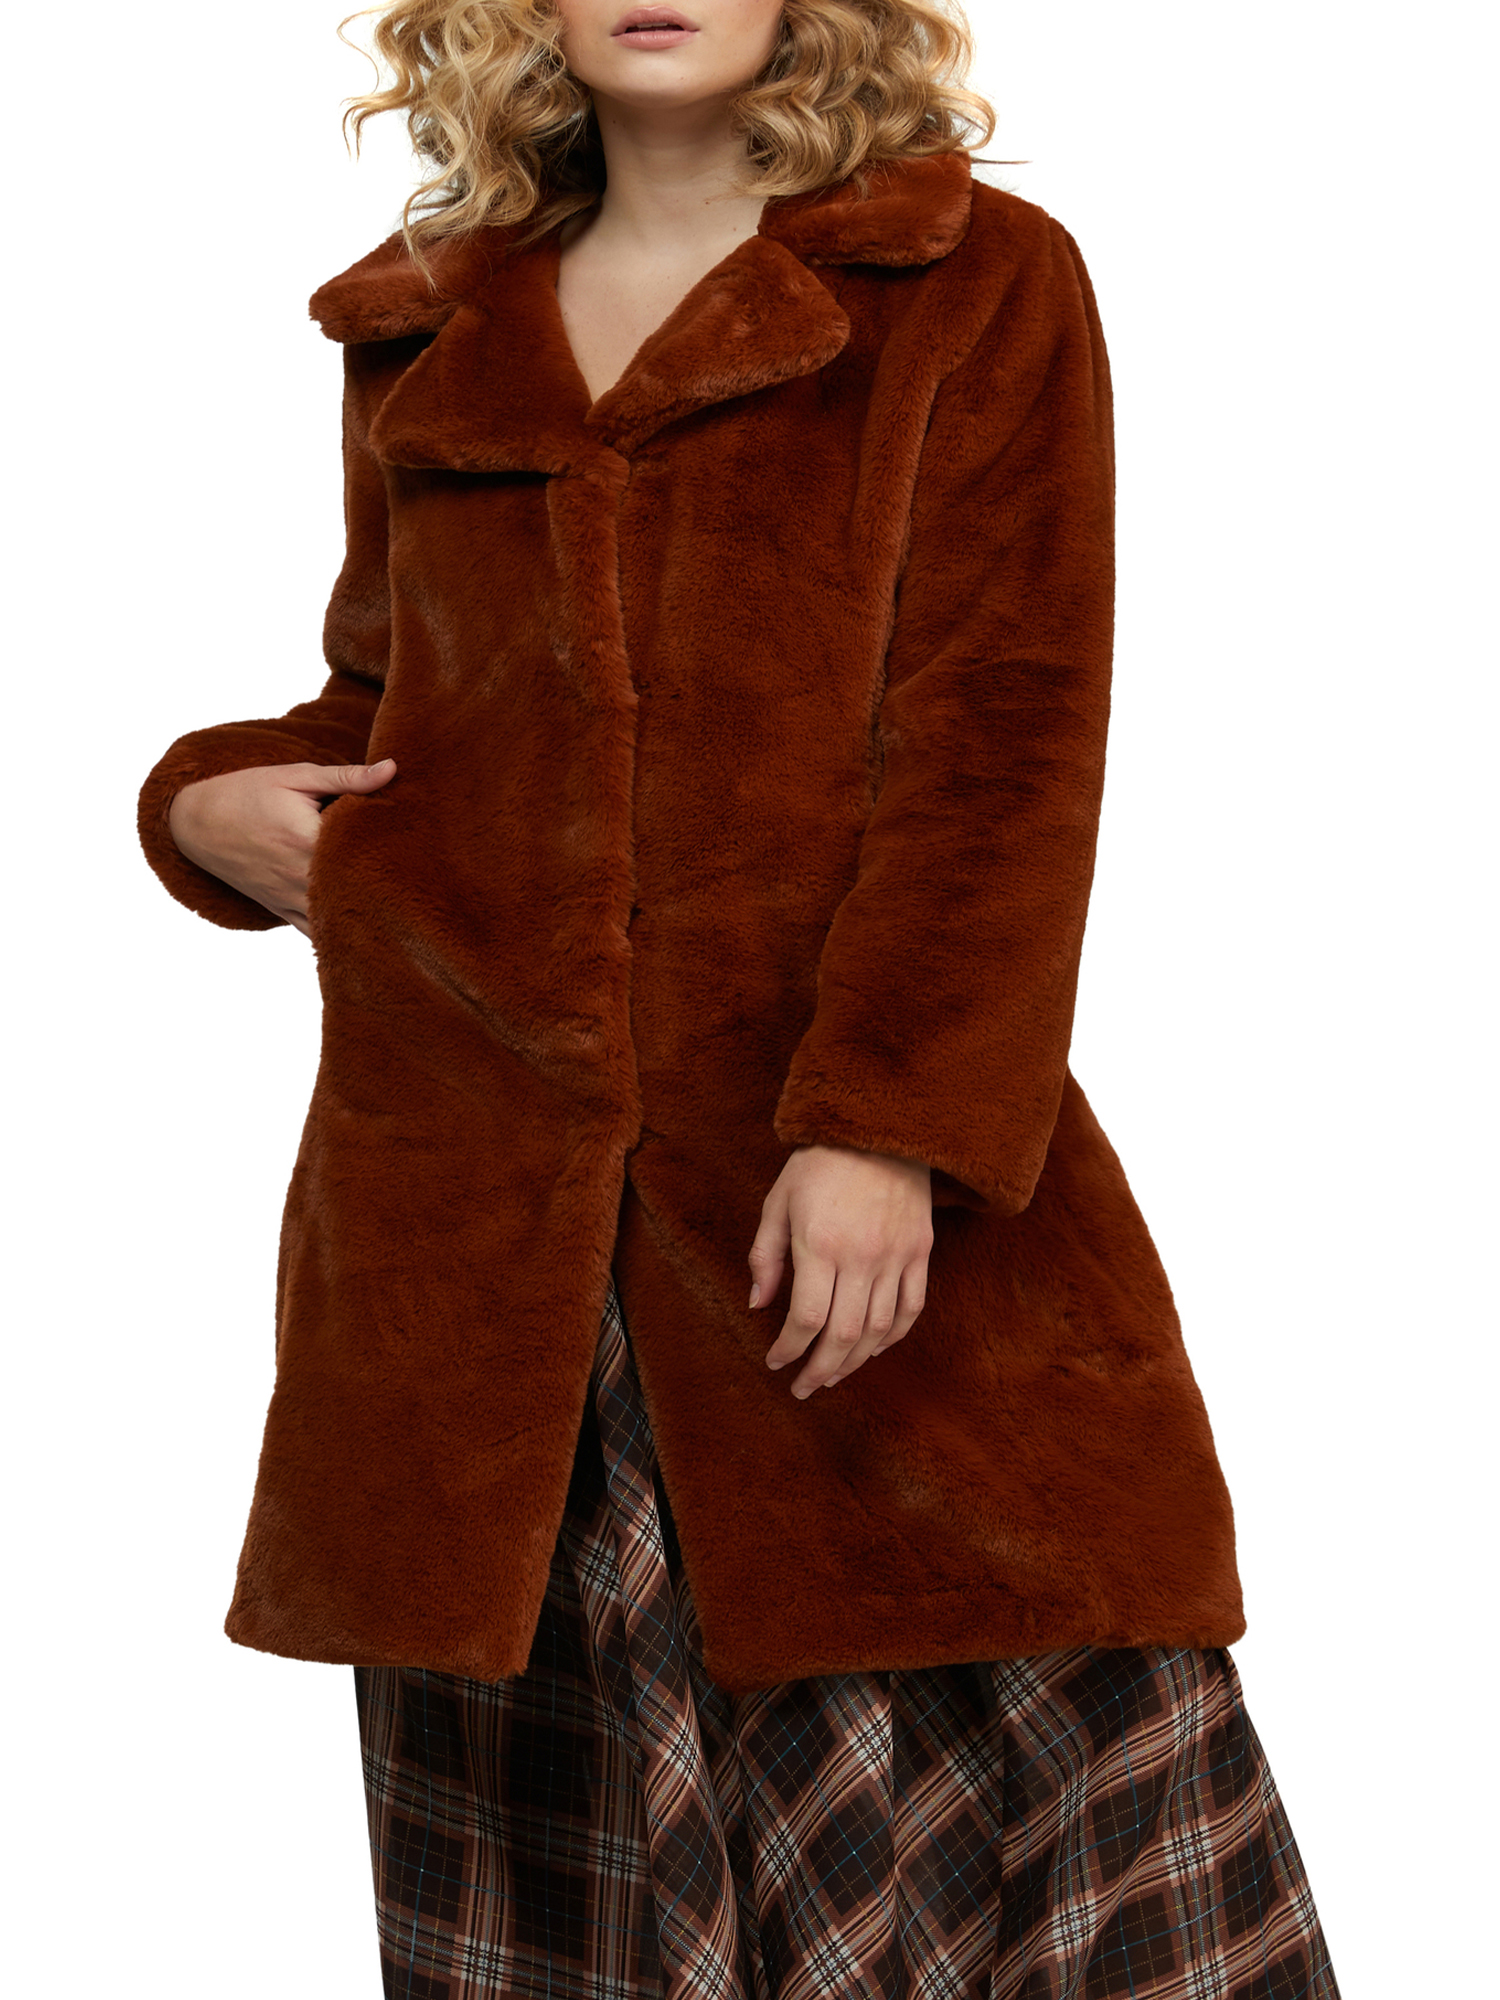 Badgely Mischka Women’s Long Faux Fur Coat - image 1 of 3